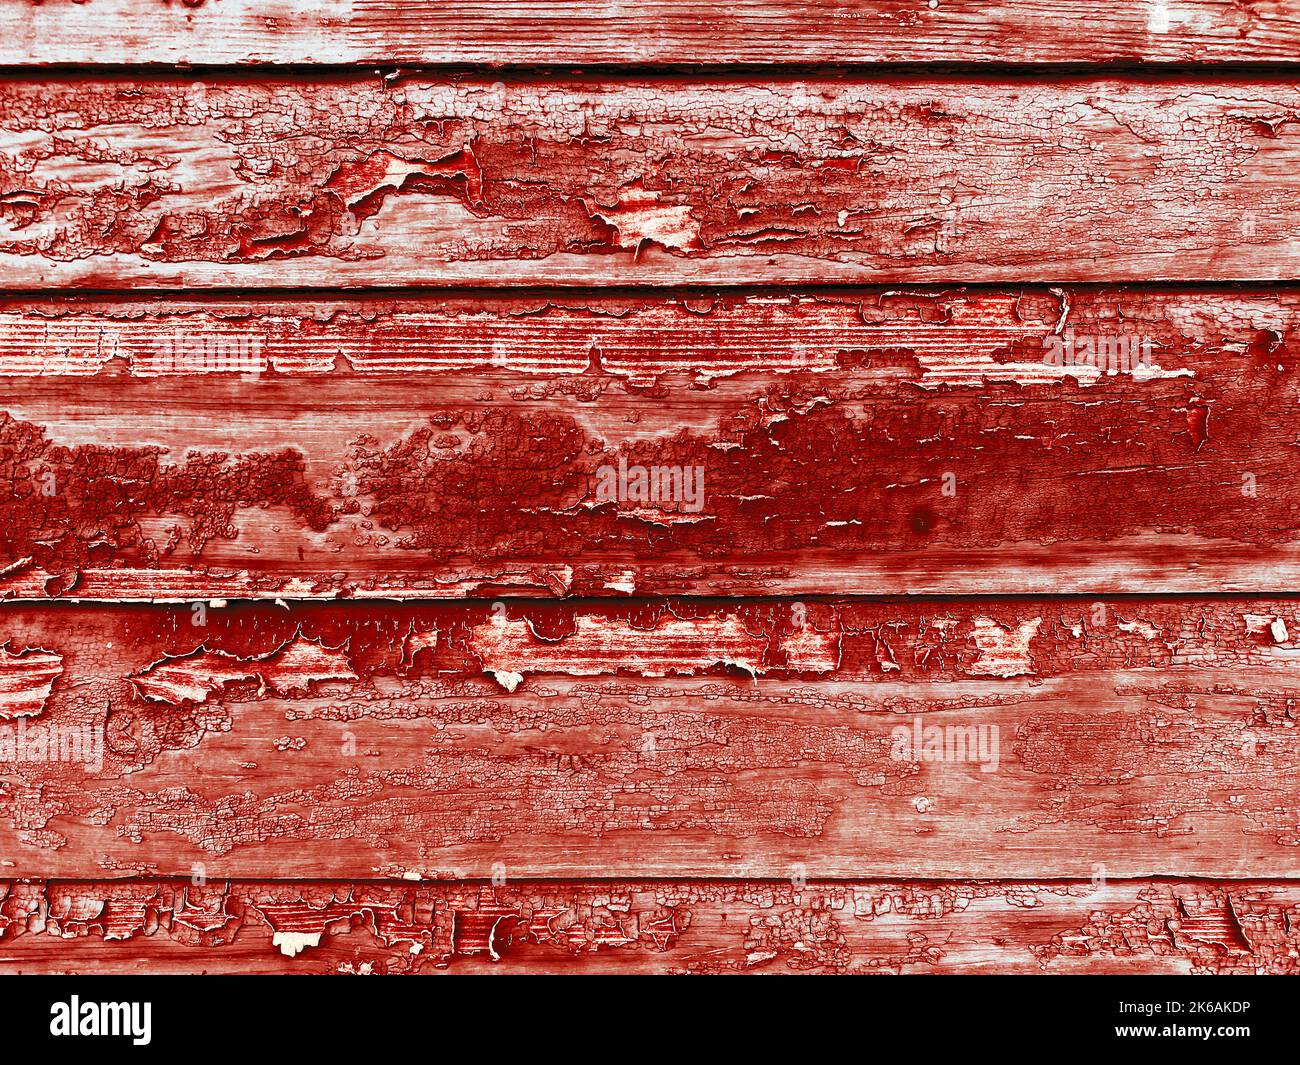 Eine abblätternde Farbe rot Holz Hauswand gemalt Haus verwittert Bretter Hütte Gebäude Hintergrund Schuppen Bord Bauernhof Scheune Bauernhaus Abstellgleis hölzerne Kulisse Stockfoto